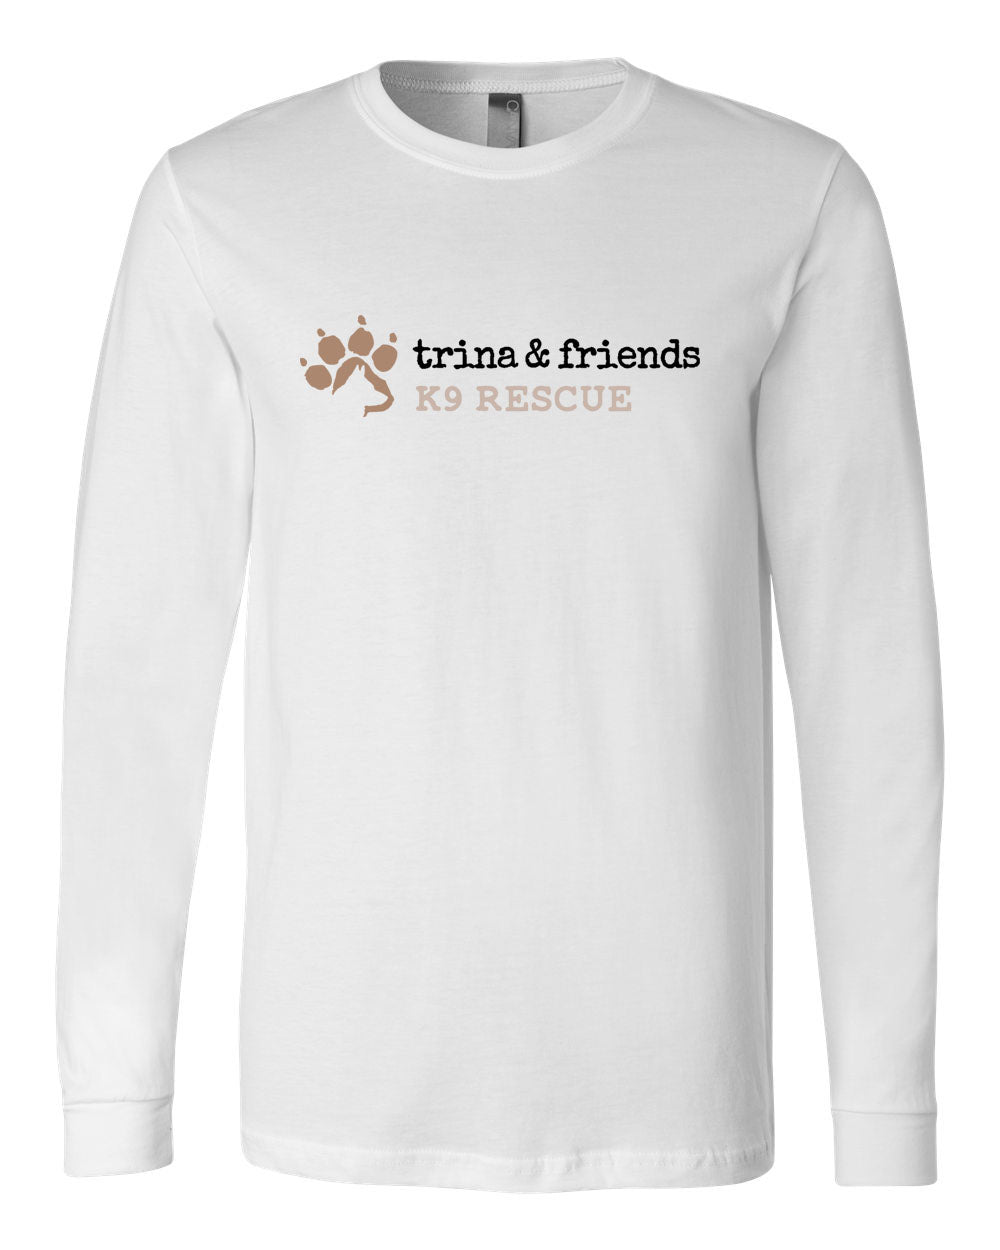 Trina & Friends Design 2 Long Sleeve Shirt